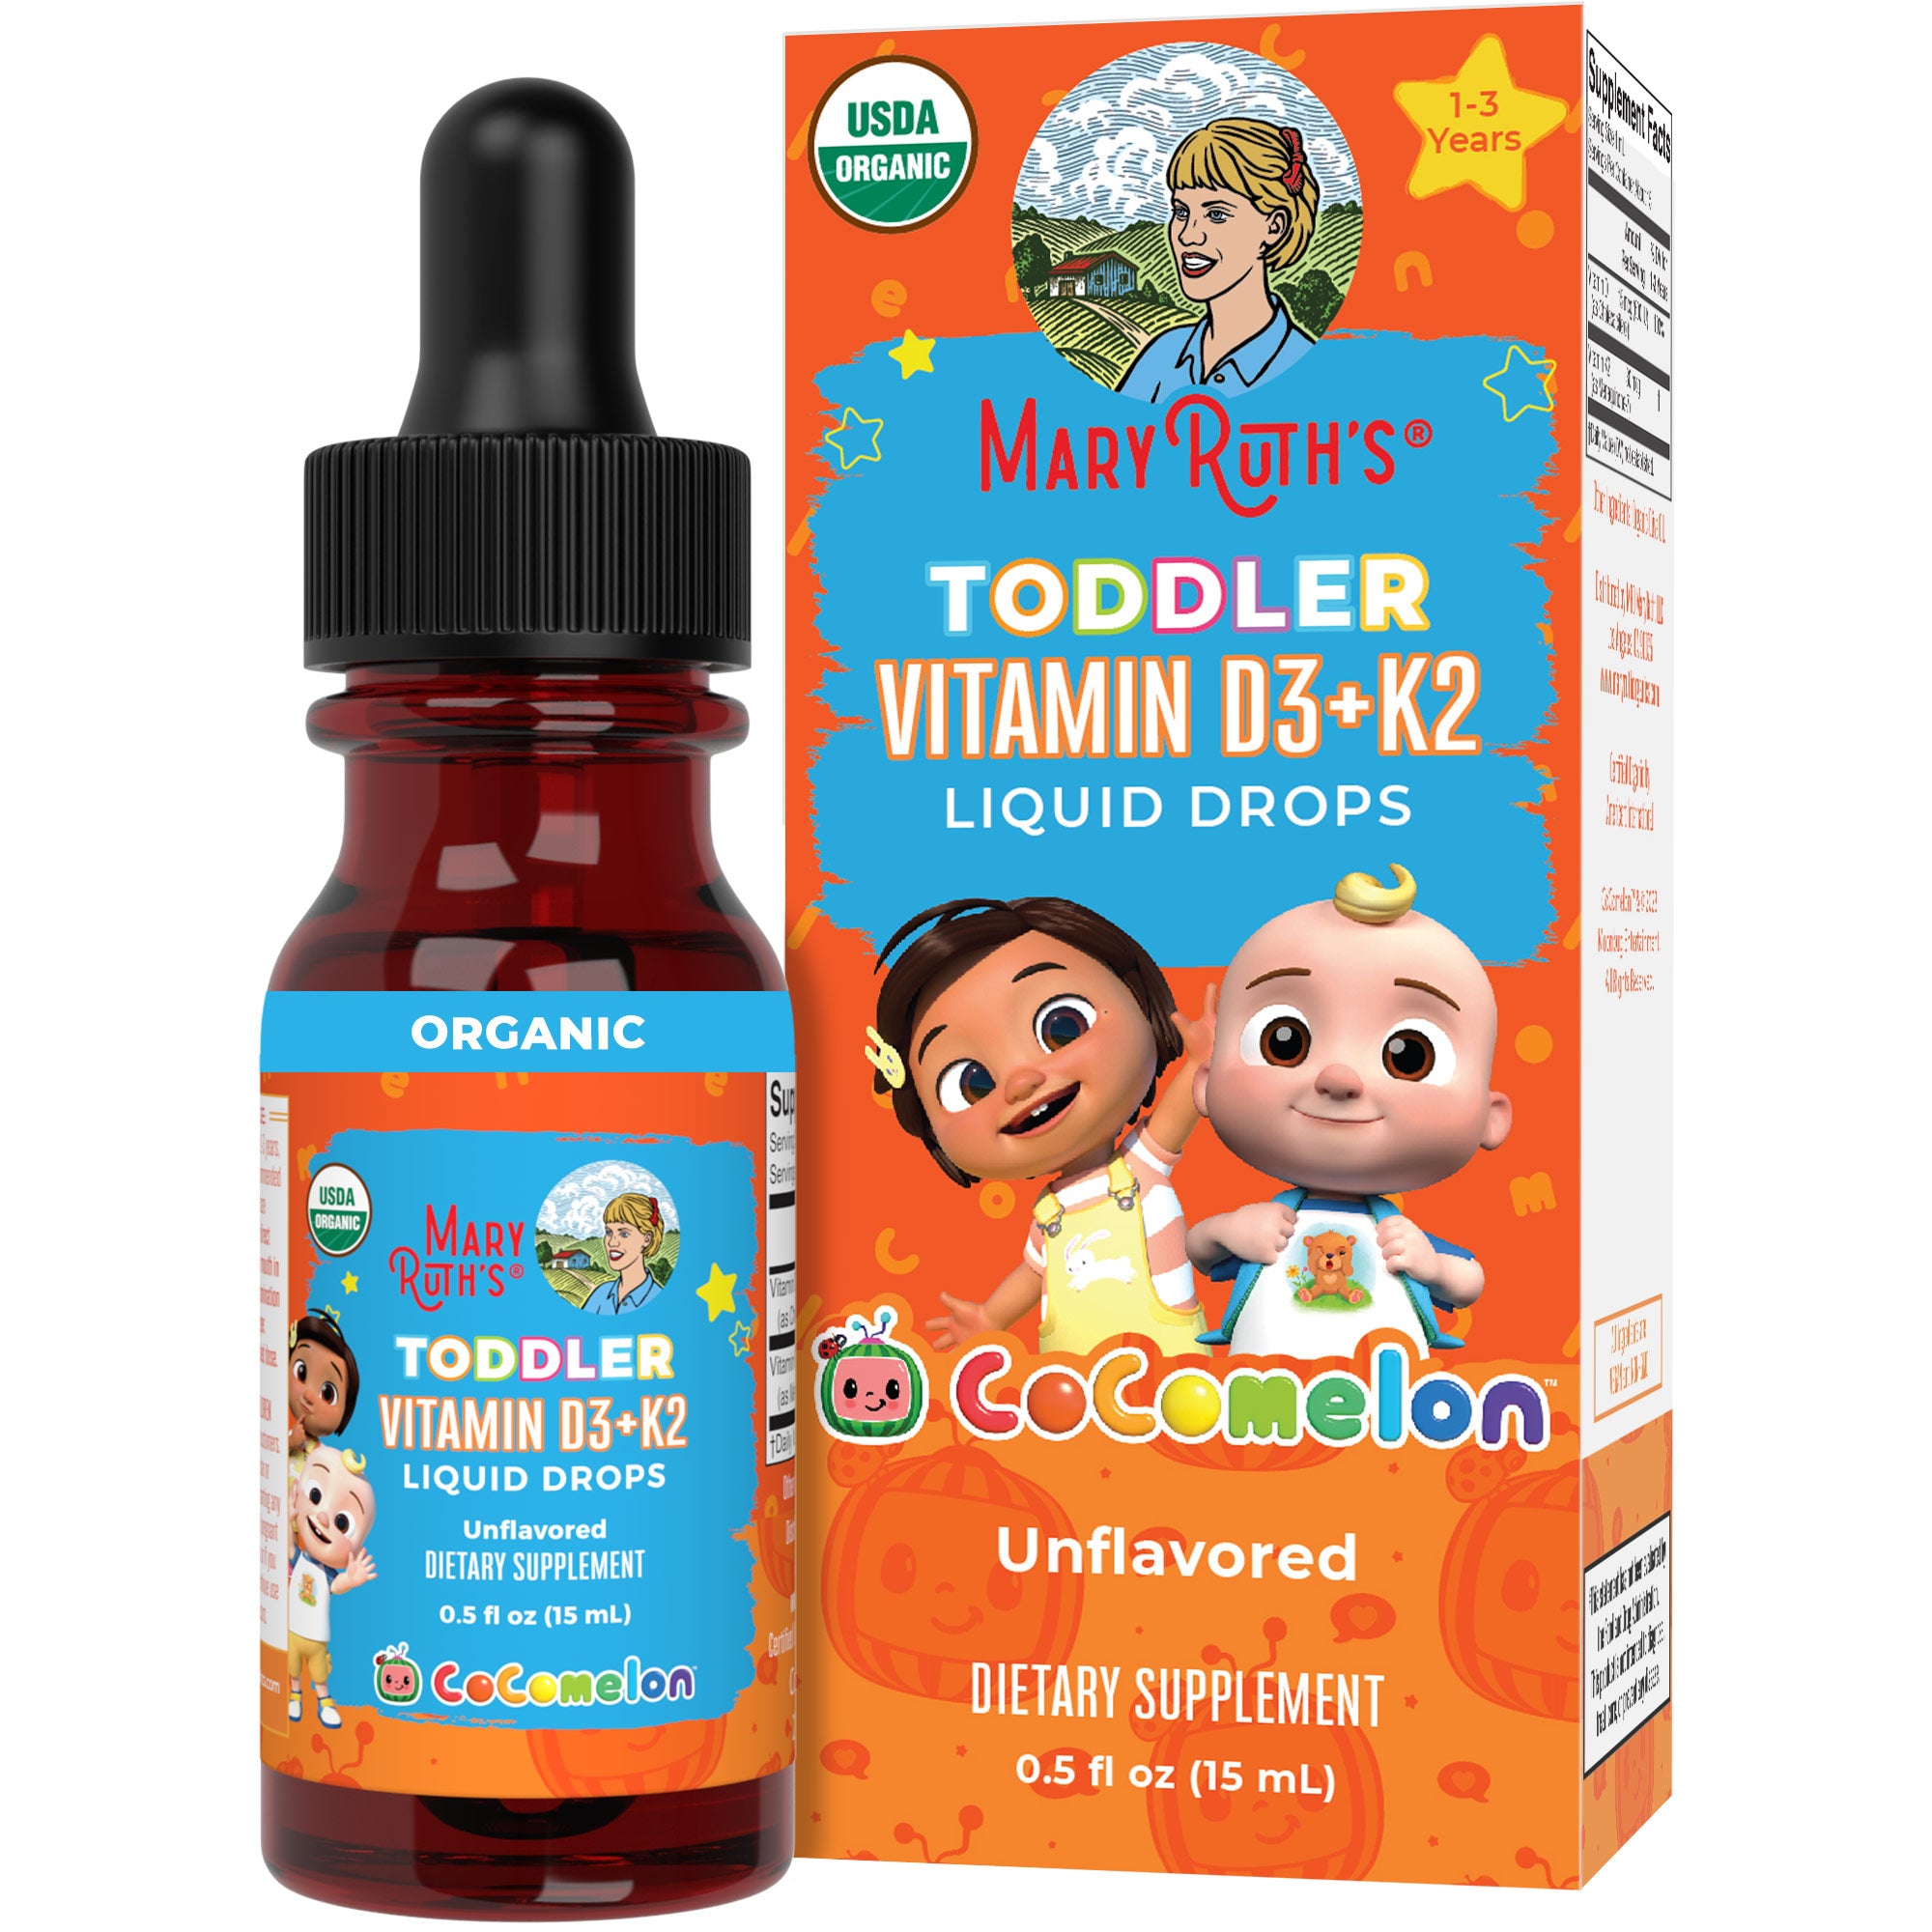 CoComelon Organic Toddler Vitamin D3+K2 Liquid Drops